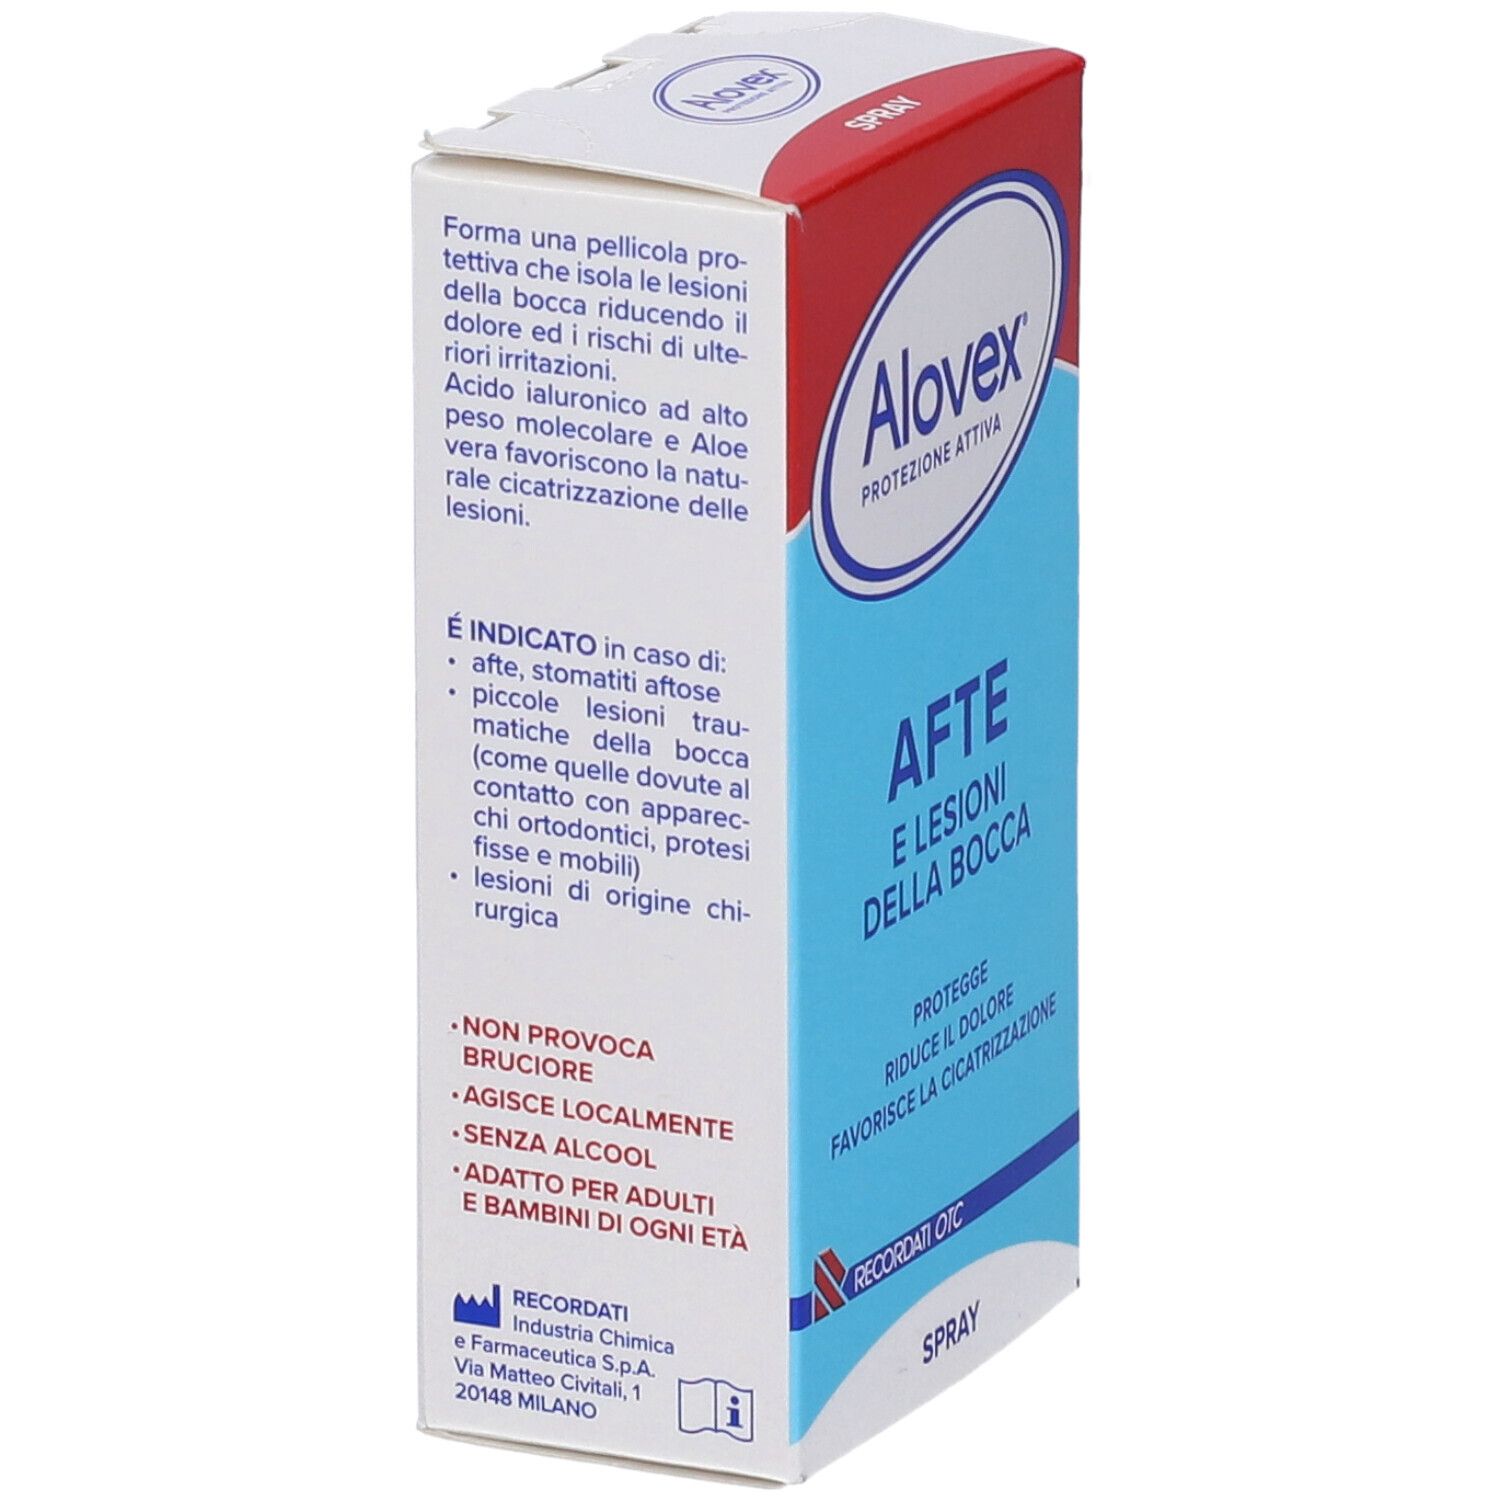 Alovex® Protezione attiva Spray